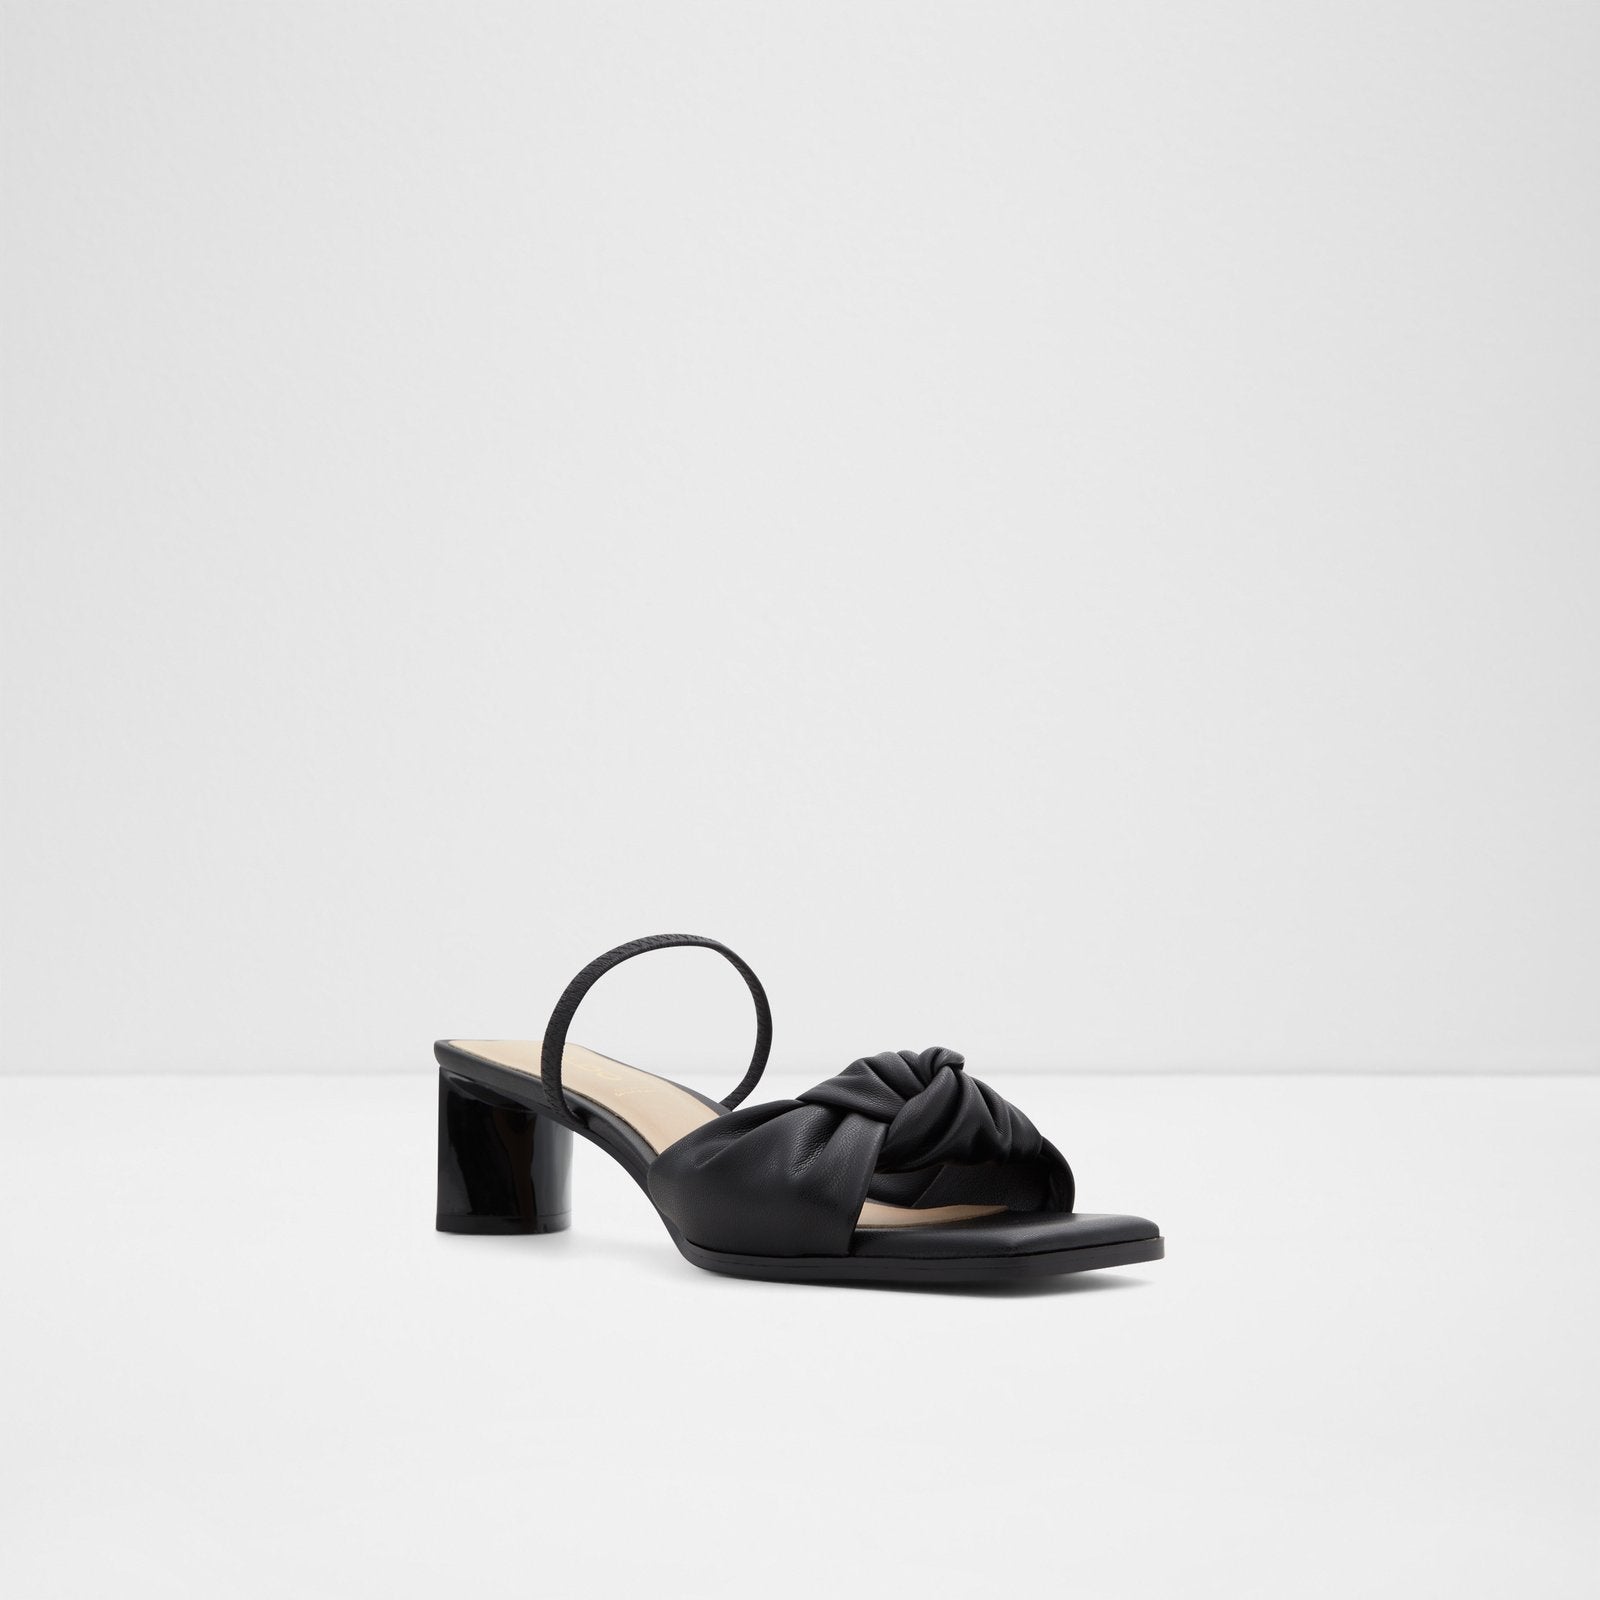 Wigoveth Women Shoes - Black - ALDO KSA